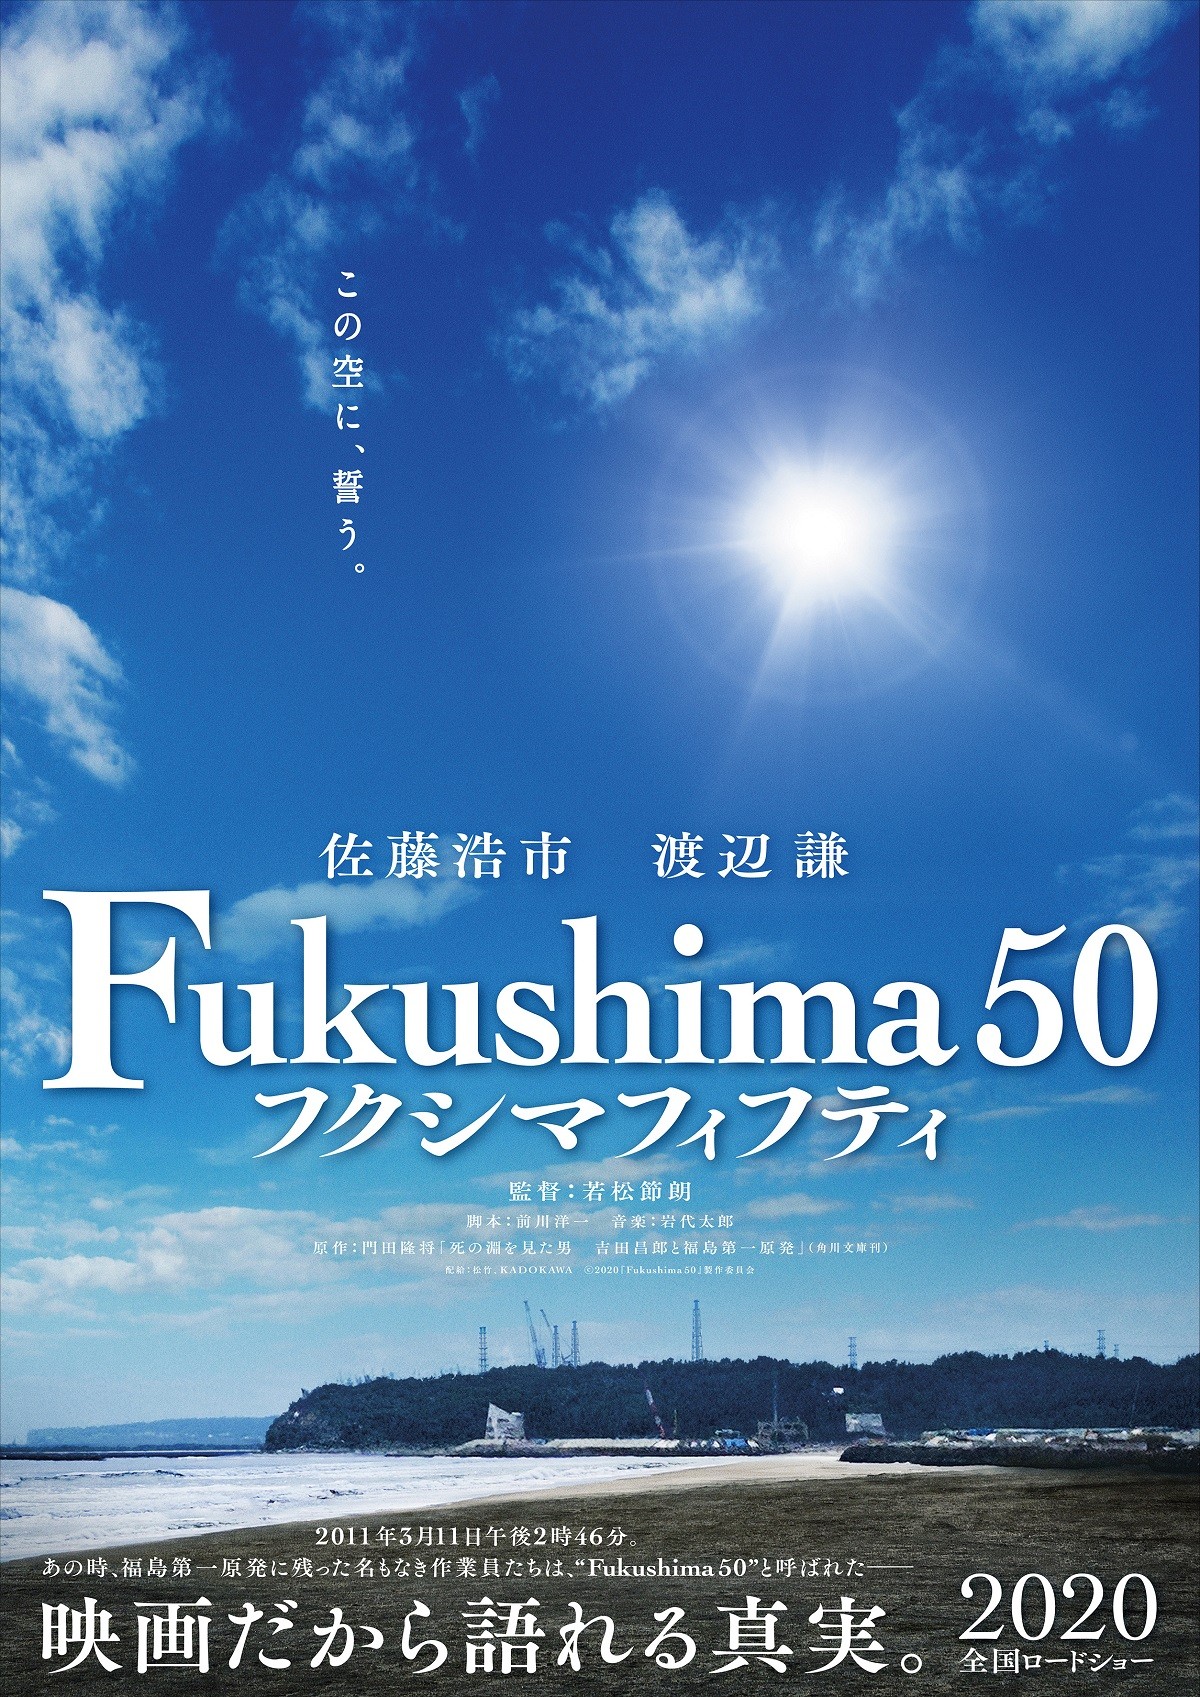 渡辺謙＆佐藤浩市 “忘れてはいけないこと”描く『Fukushima 50』への思い